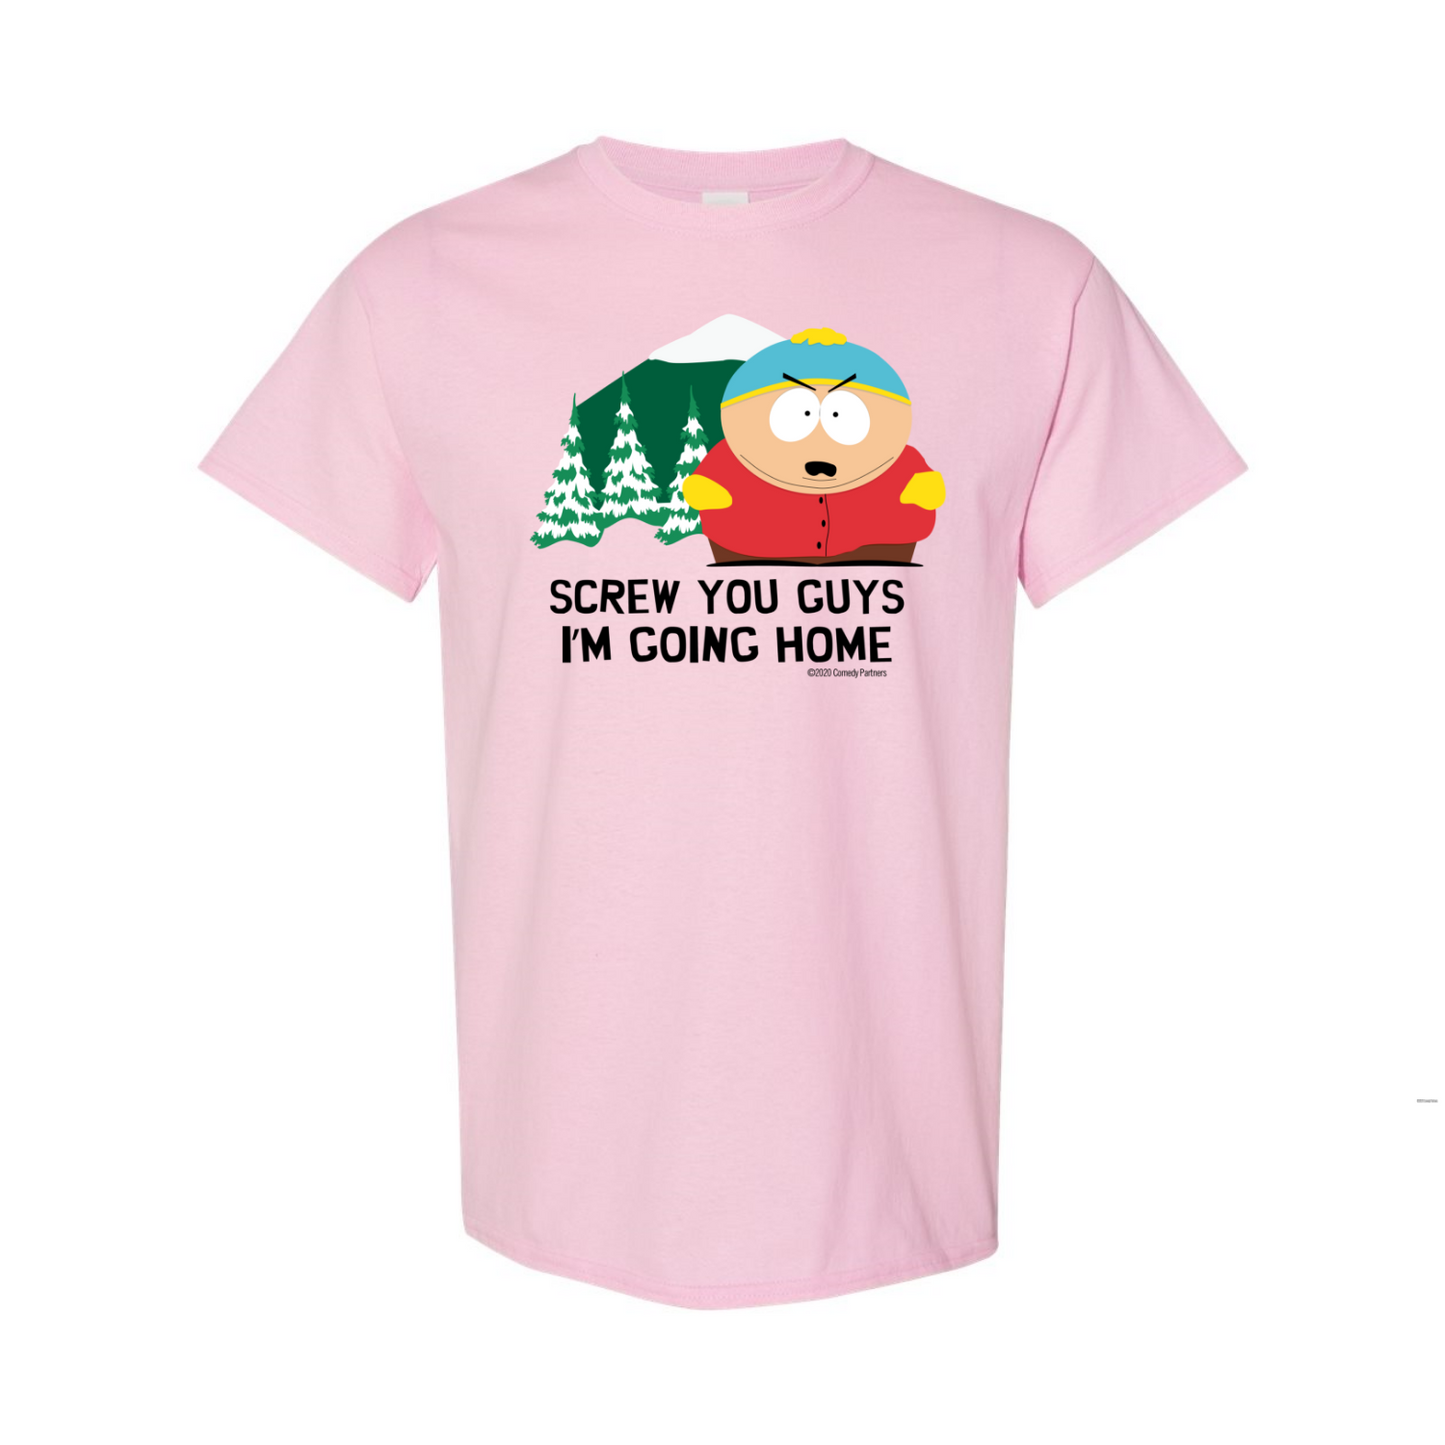 South Park Cartman Screw You Guys Pink Short Sleeve T-Shirt